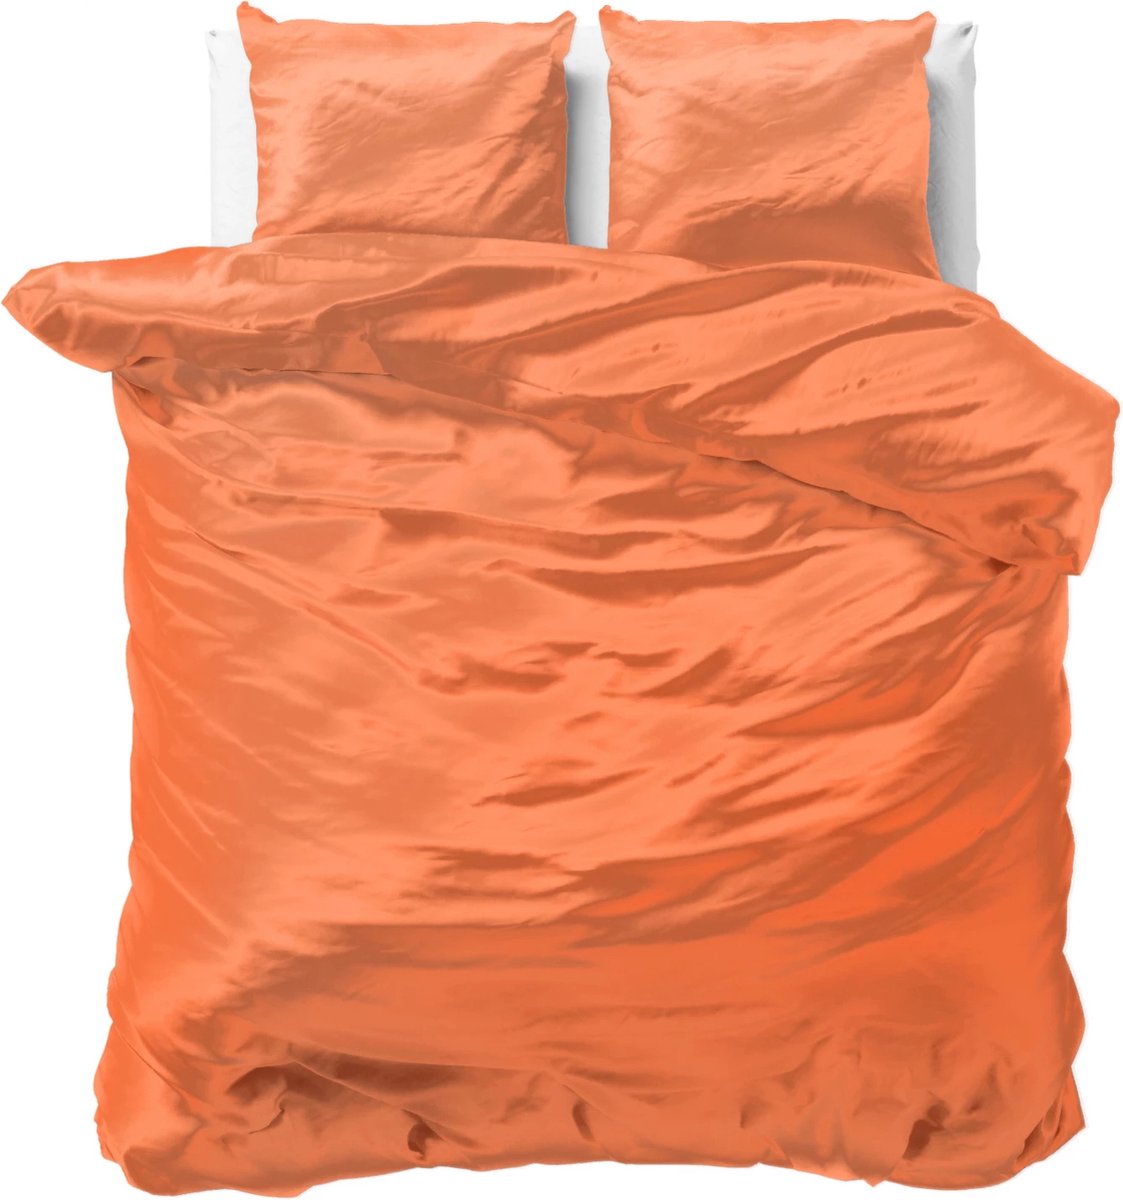 Luxe glans satijn dekbedovertrek uni oranje - lits-jumeaux (240x200/220) - tegen acne, onzuiverheden en warrig haar - heerlijk zacht en soepel